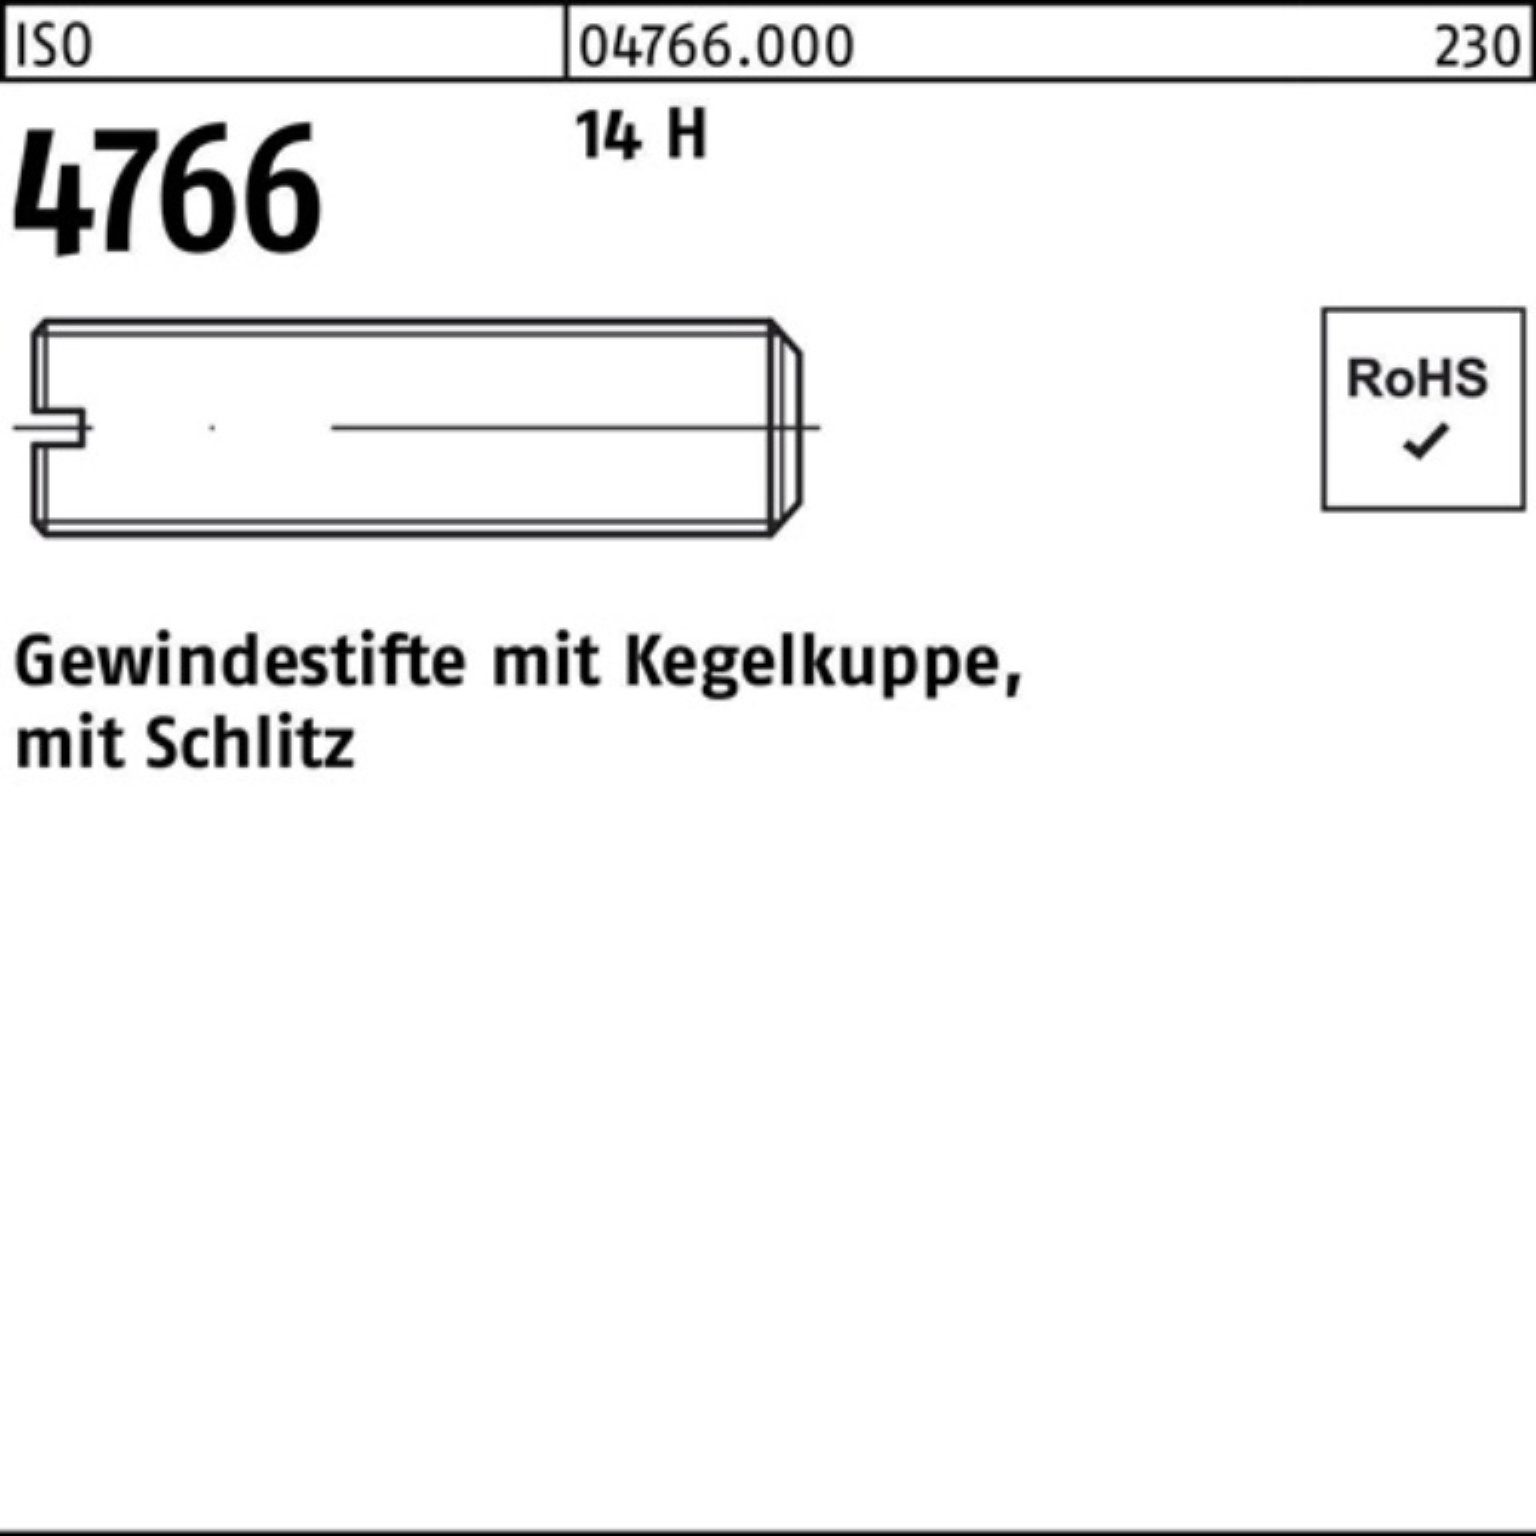 St Gewindestift 200 Kegelkuppe/Schlitz M4x Gewindebolzen 200er H 14 16 Reyher ISO Pack 4766